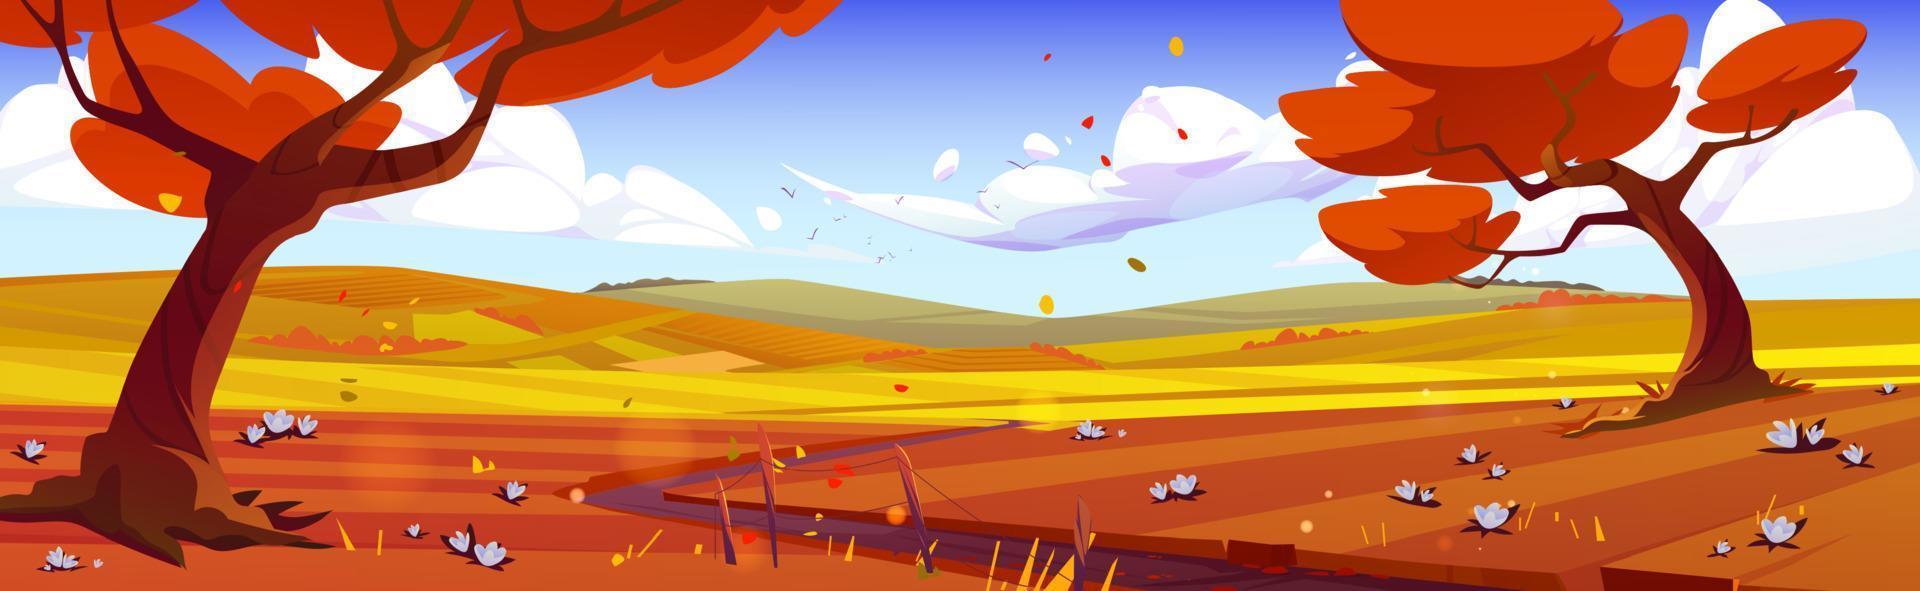 paisagem de natureza de outono dos desenhos animados, cena de outono rural vetor